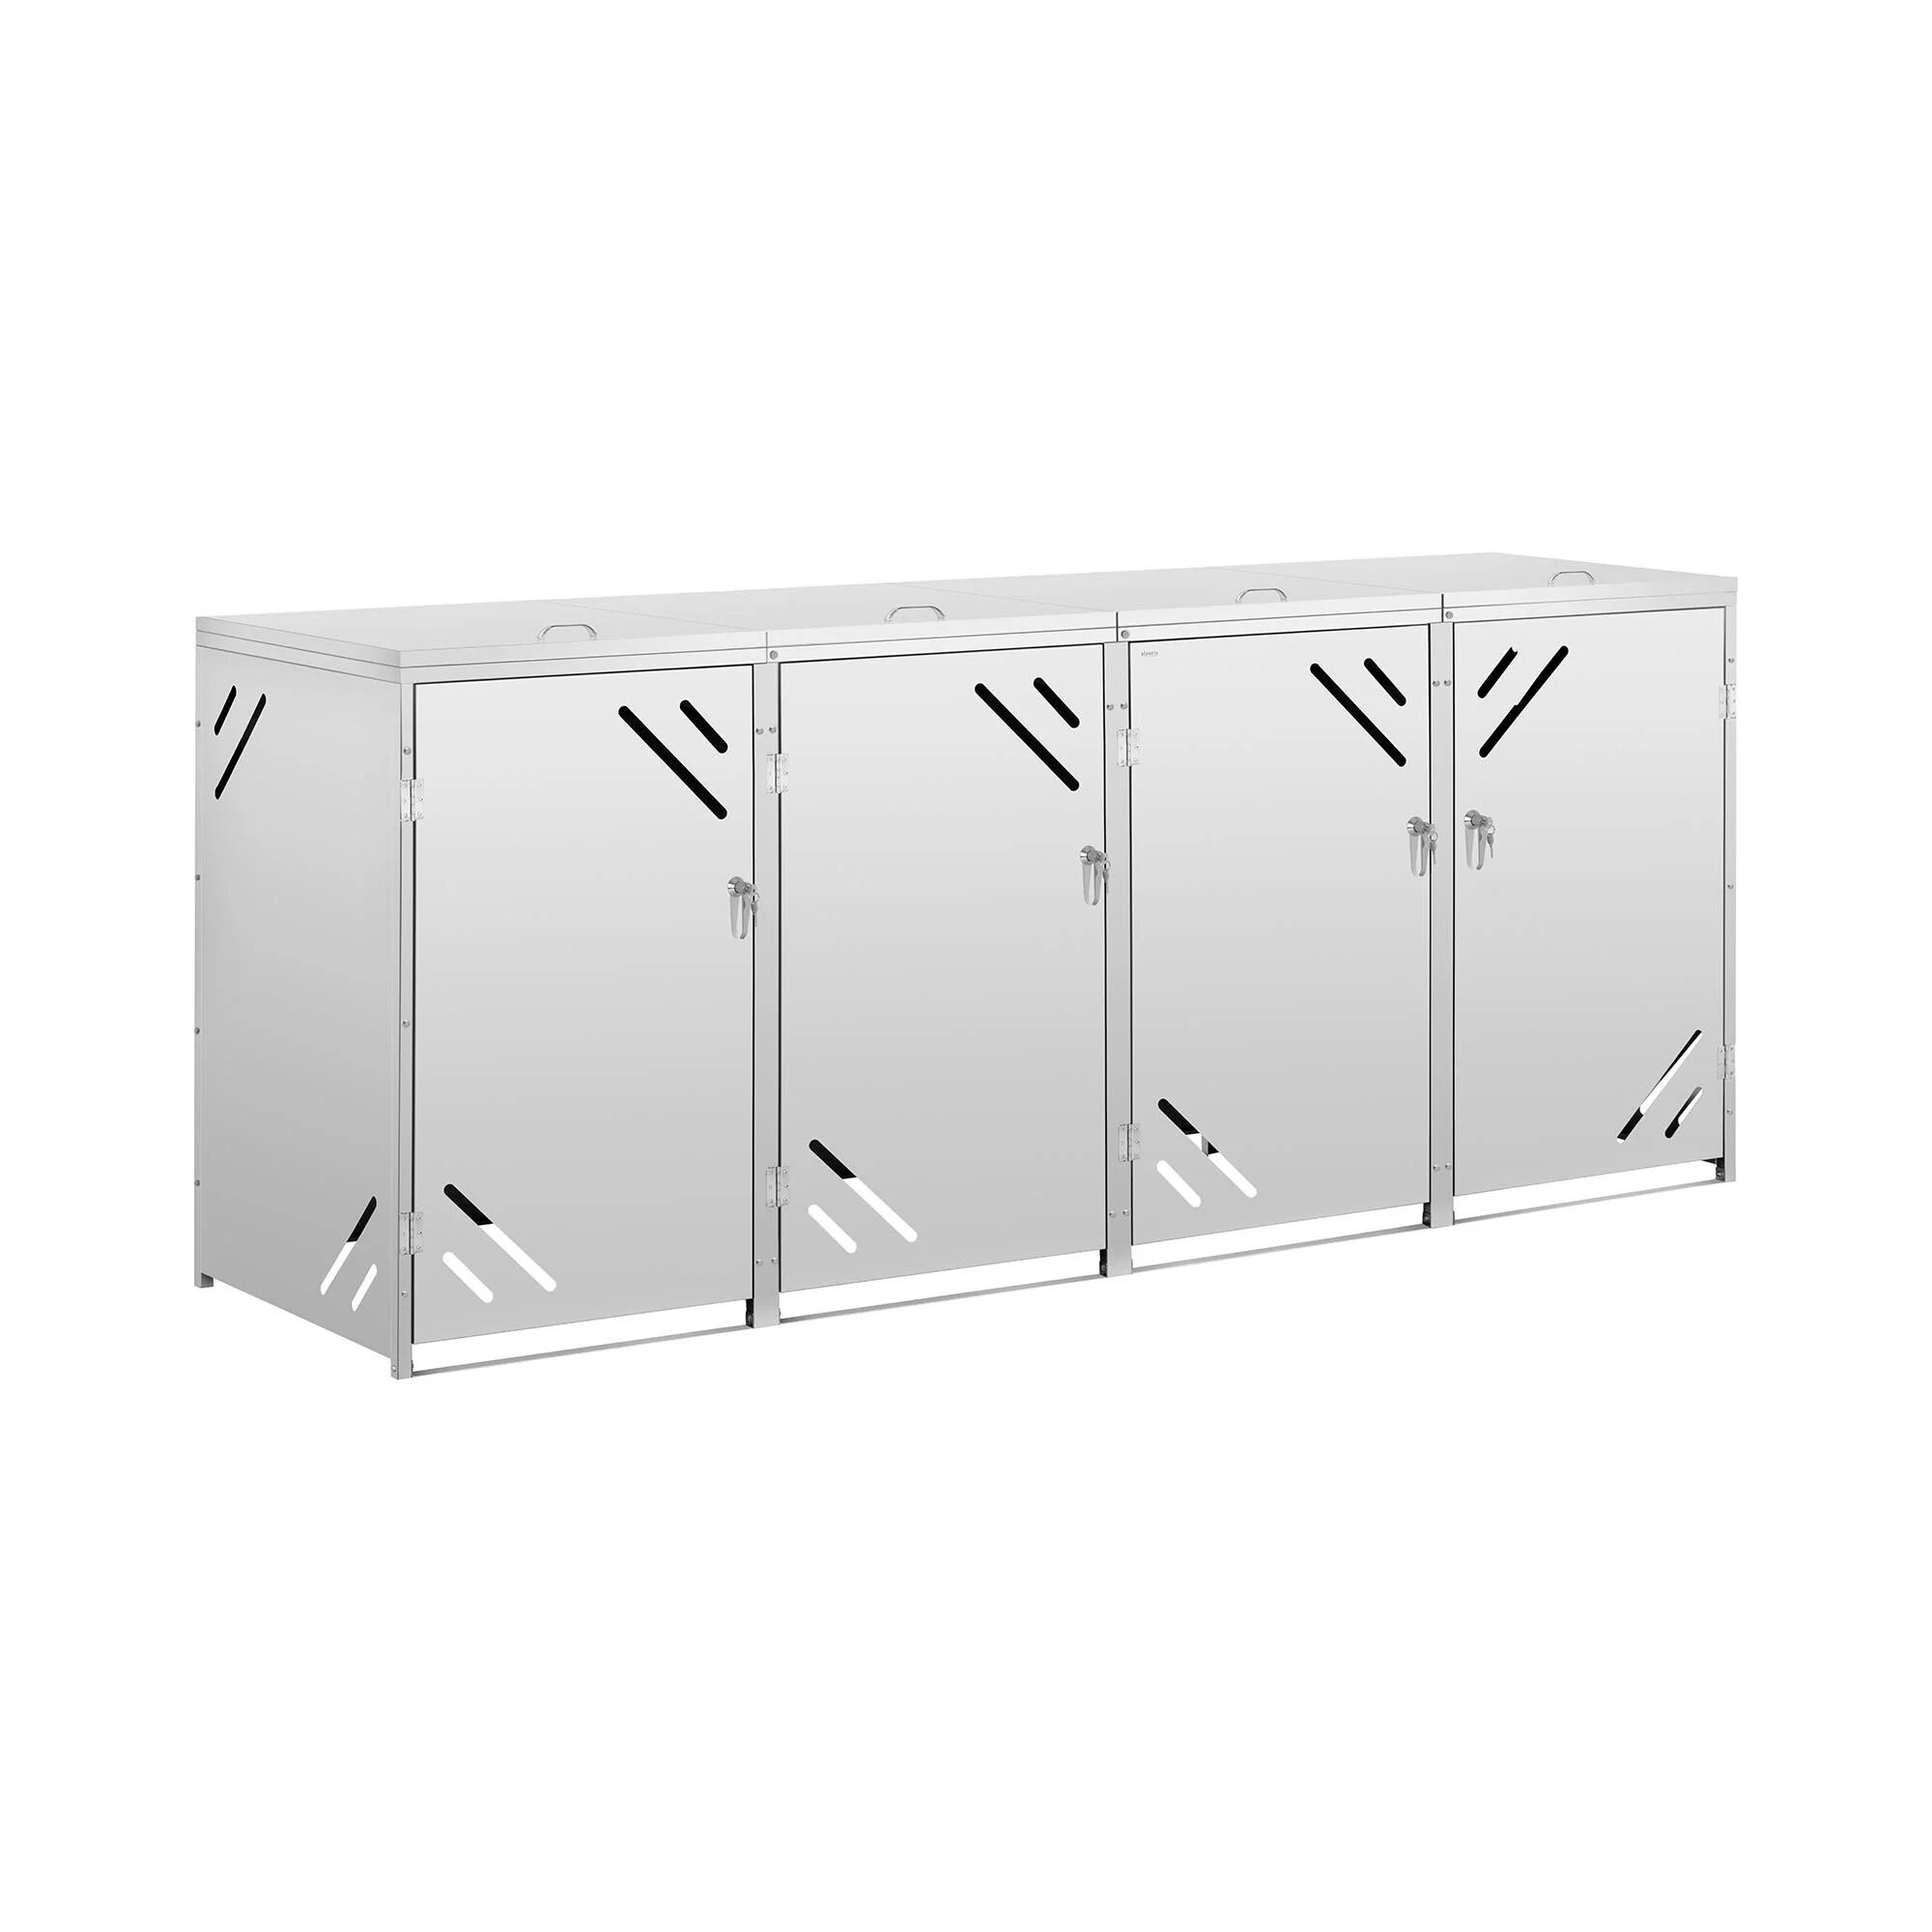 ulsonix Bin Storage Box - 4 x 240 L - diagonal air slots ULX-480-2